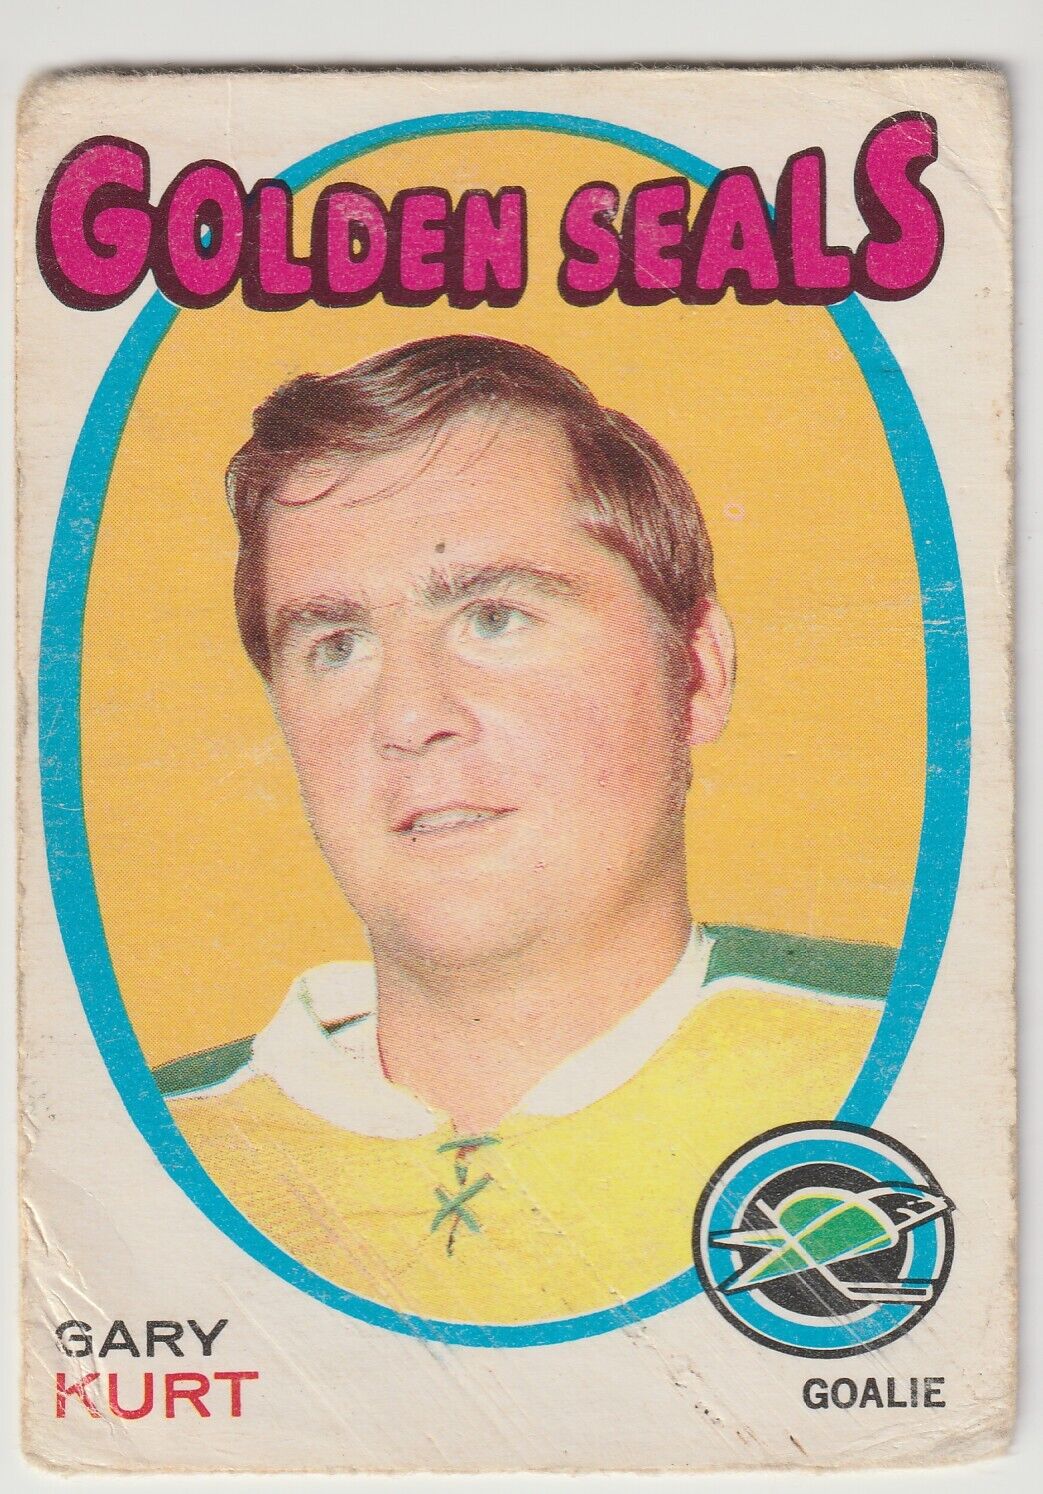 1971-72 OPC Gary Kurt Rookie Card #181 California Golden Seals. rookie card picture